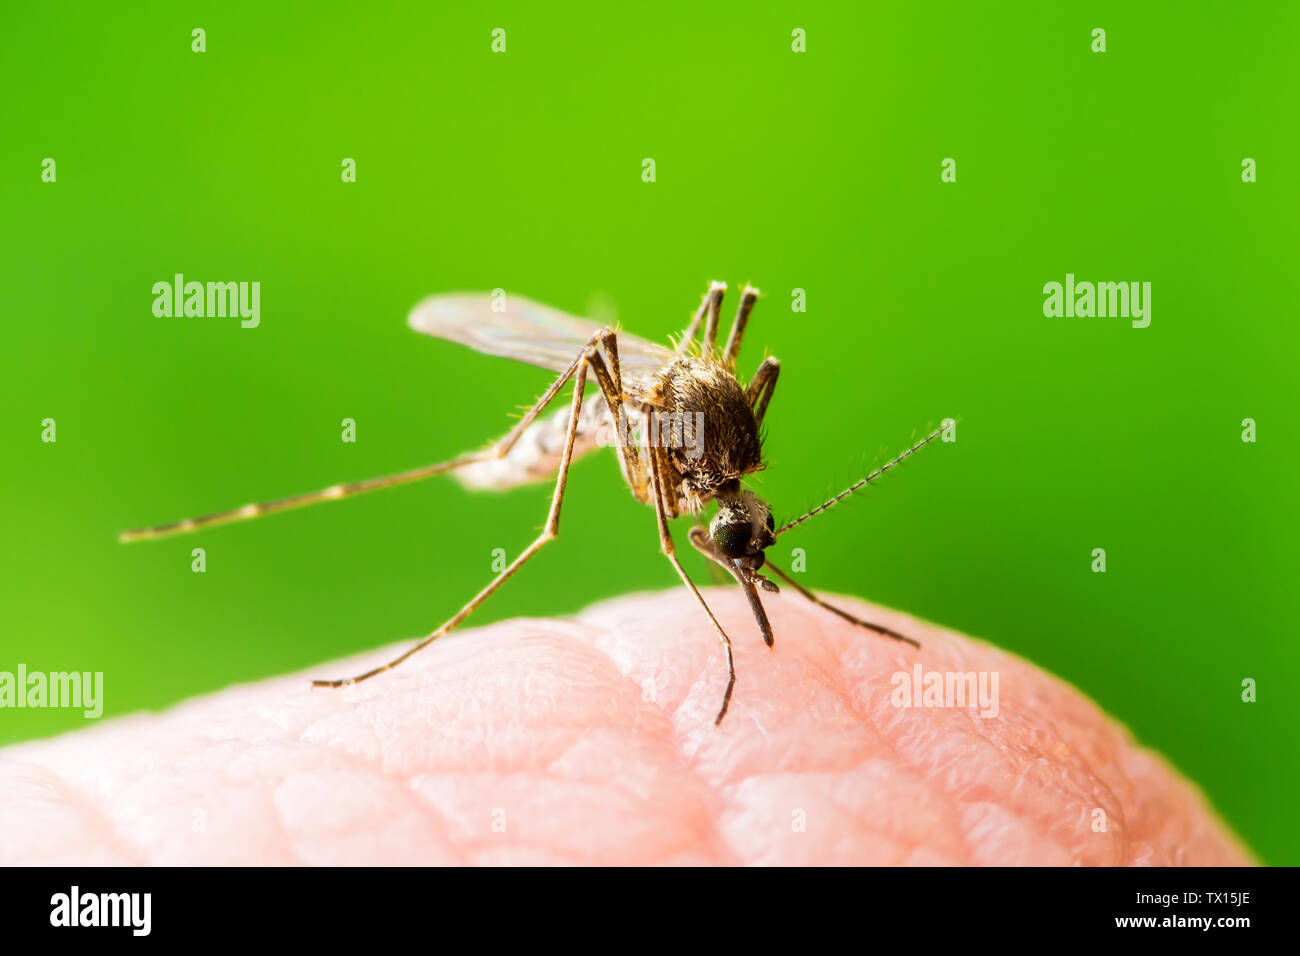 Gelbfieber, Malaria oder Zika Virus infizierte Mücken Insekten Makro auf grünem Hintergrund Stockfoto